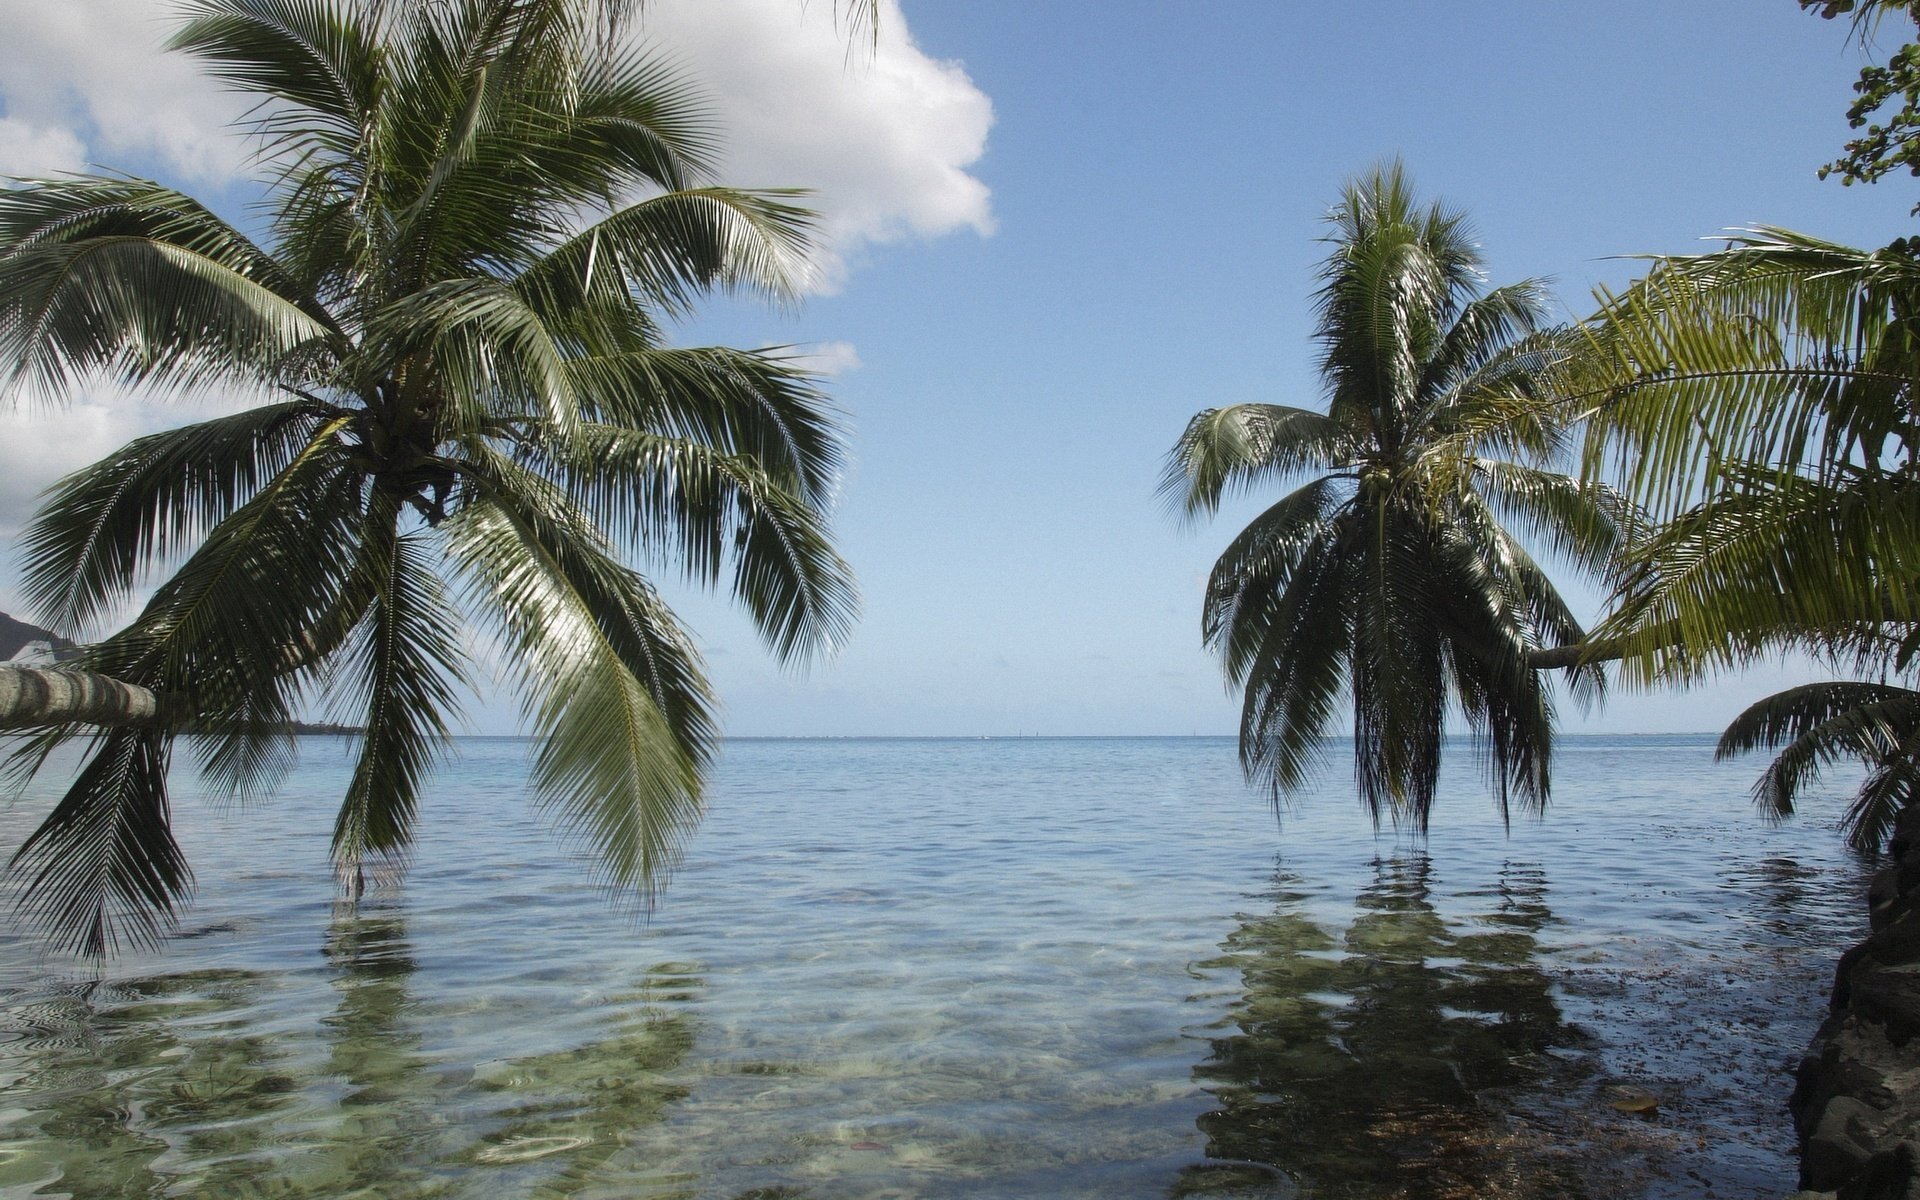 Тропический остров в океане с пальмами над водой, чистое небо и солнечные лучи